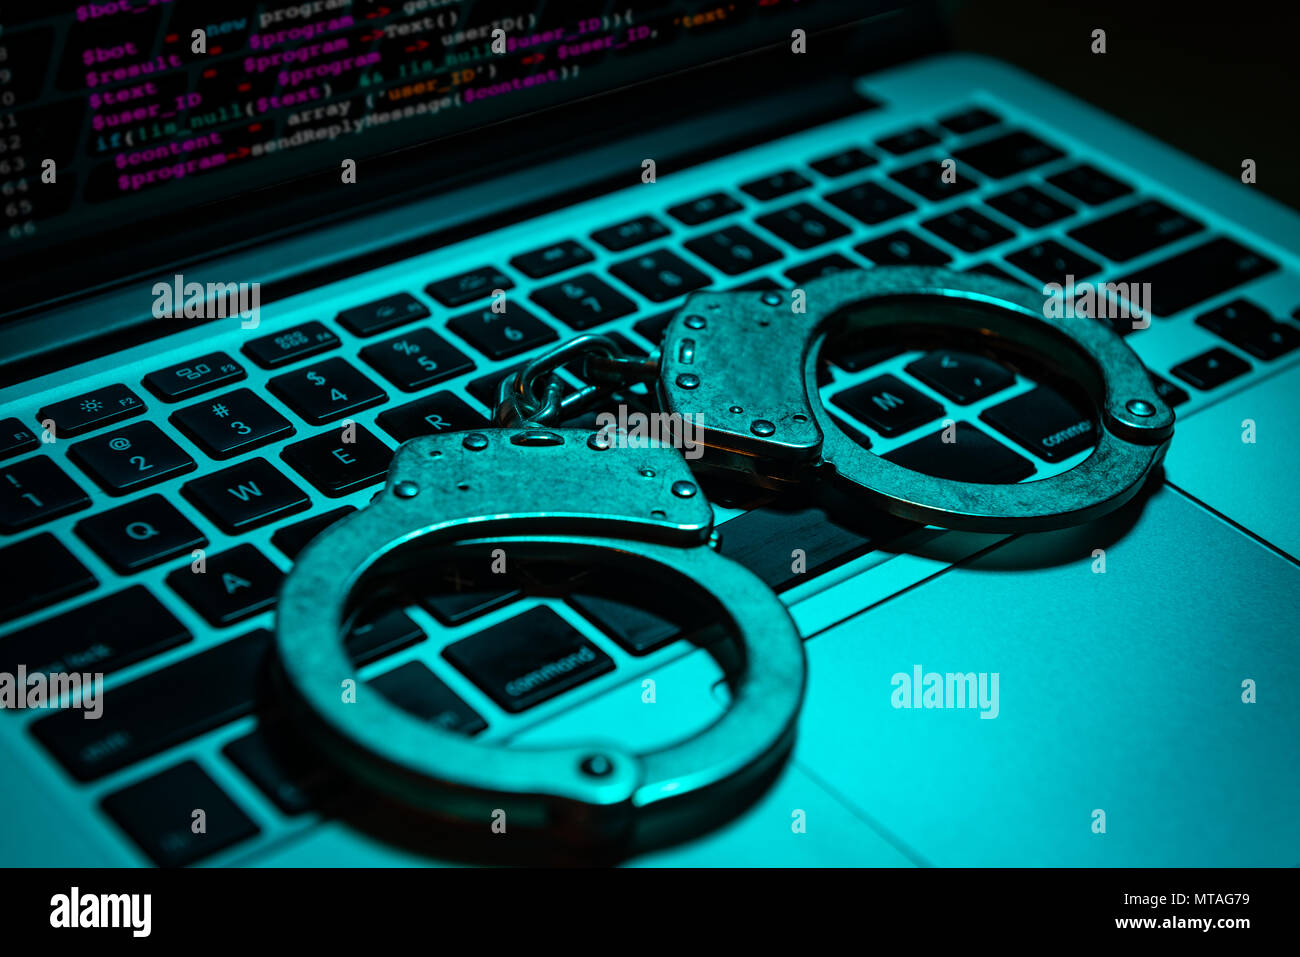 Ein paar Handschellen sitzen auf einem Laptop Tastatur. Technologie/Internetkriminalität Konzept. Stockfoto